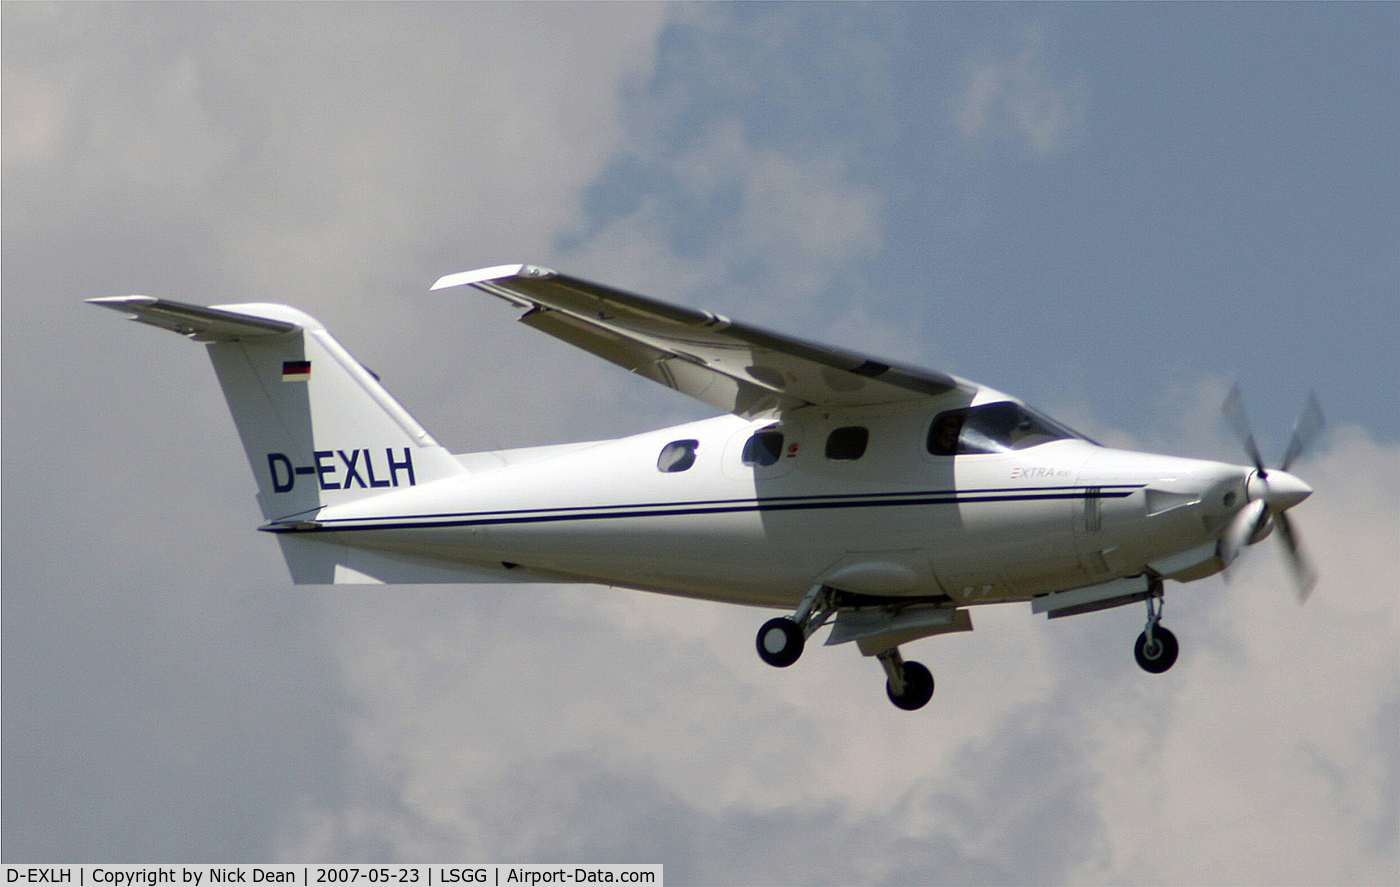 D-EXLH, 2000 Extra EA-400 C/N 06, LSGG